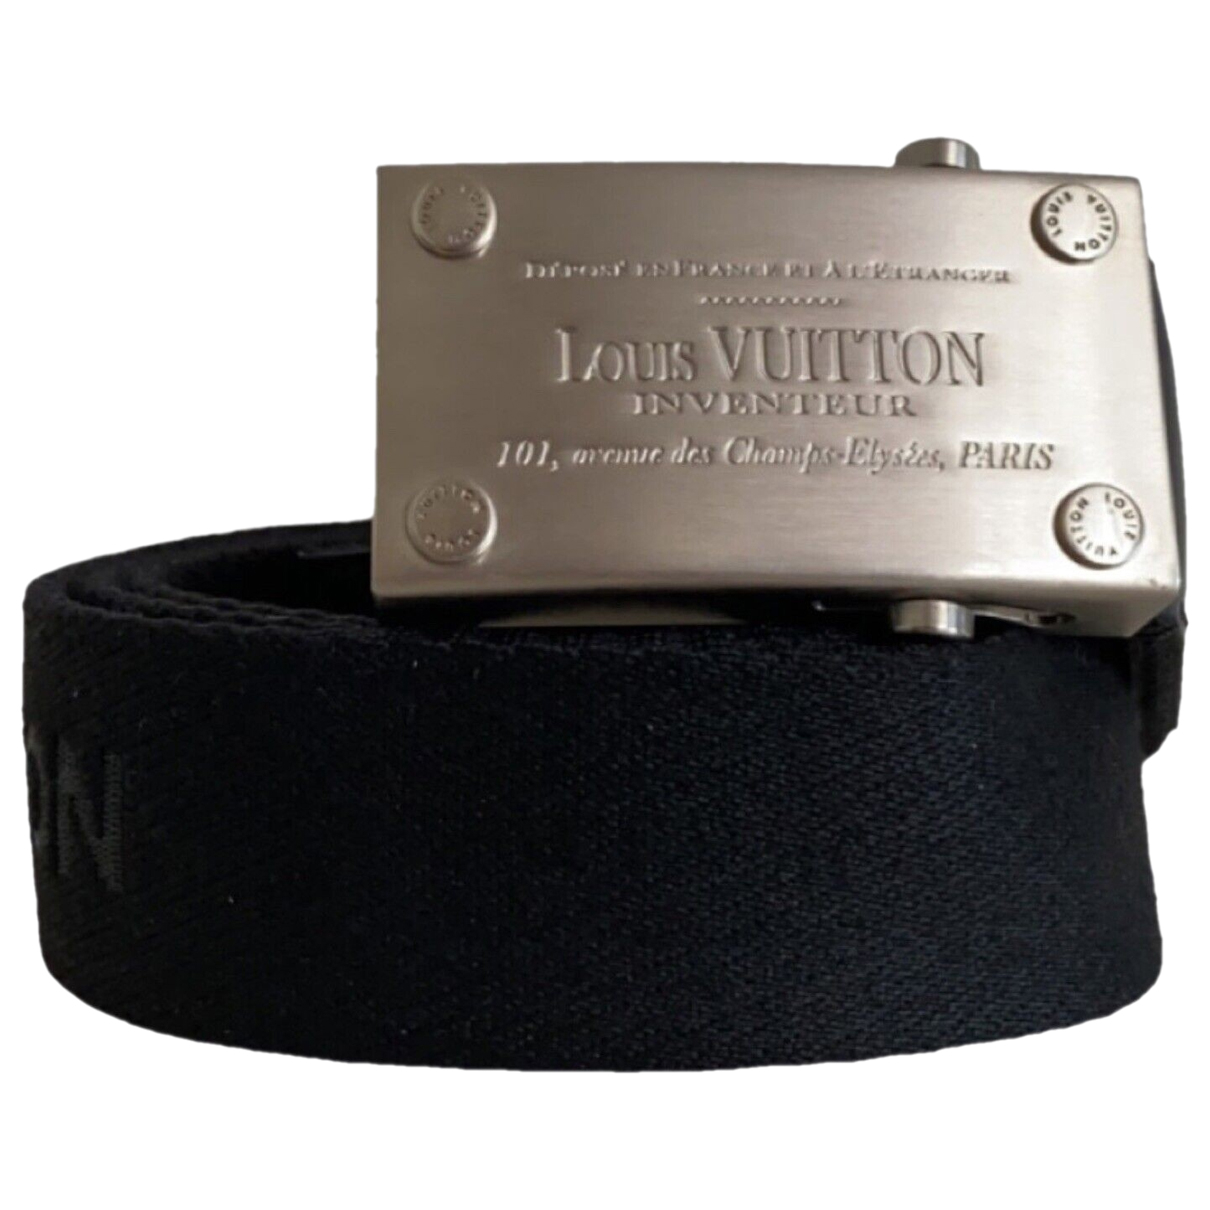 LOUIS VUITTON Belts Louis Vuitton Cloth For Male 85 Cm for Men